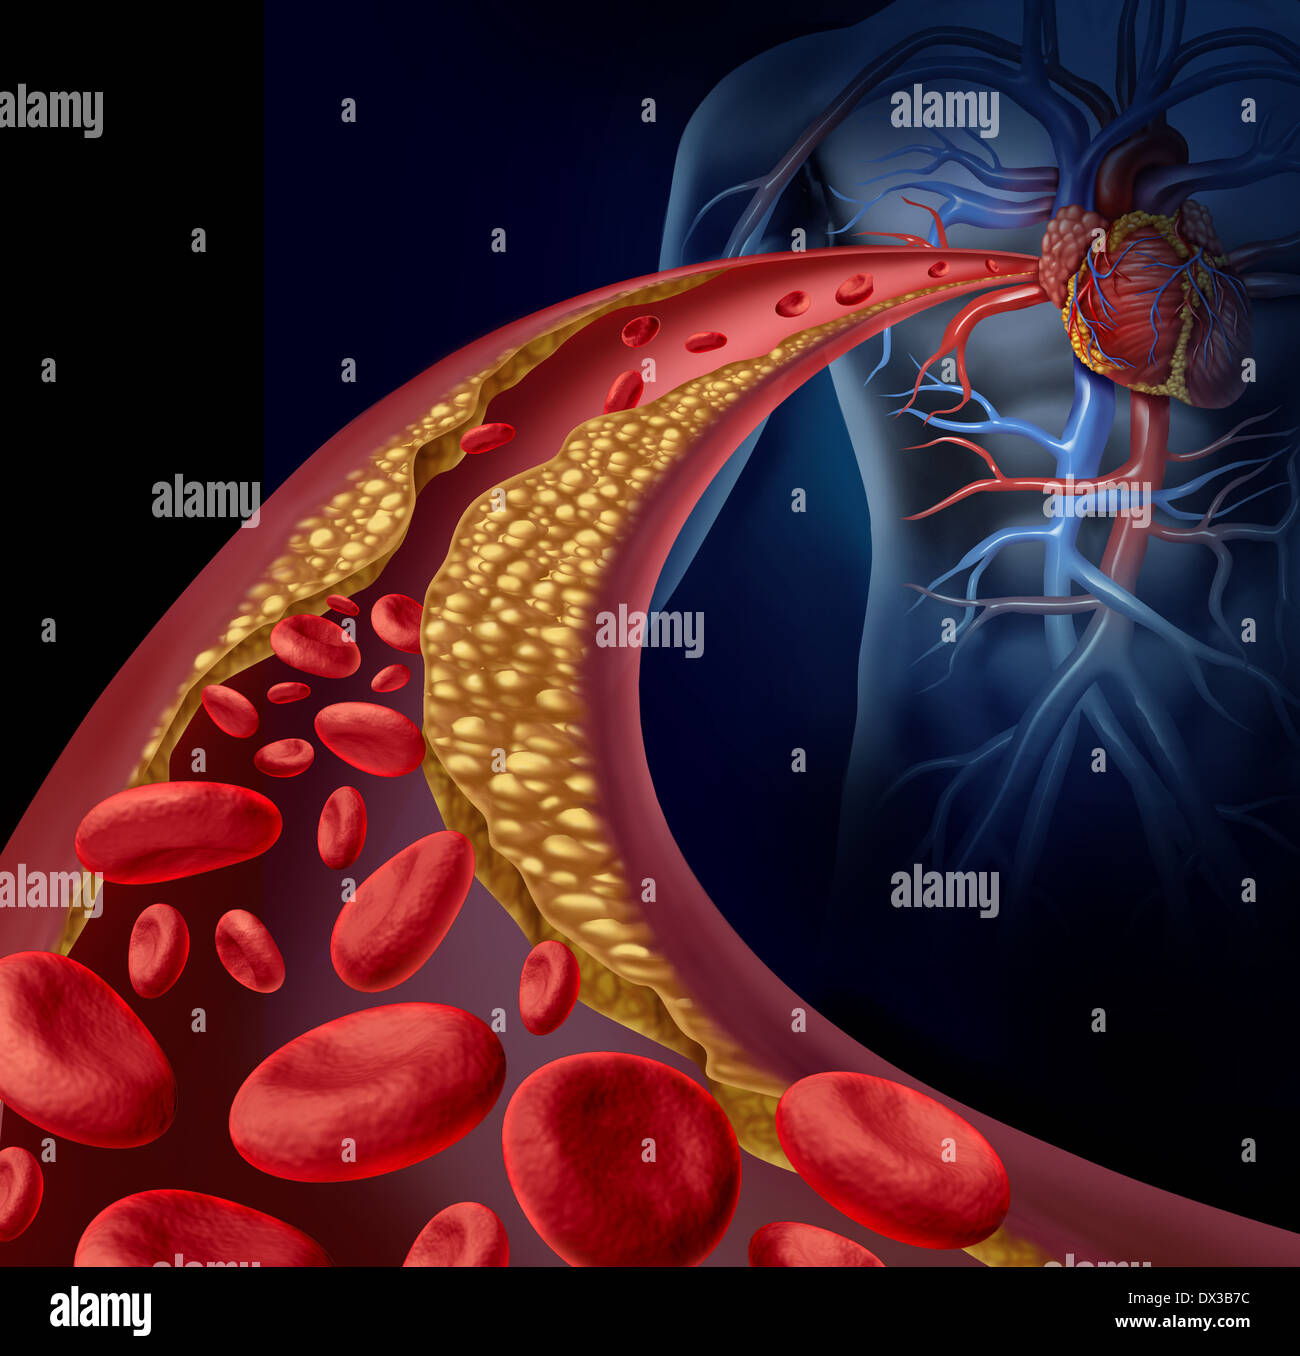 Verstopfte Arterie und Atherosklerose medizinische Krankheitskonzept mit drei dimensionale menschliche Arterie mit Blut Zellen, die als Symbol der arteriosklerotischer Gefäßerkrankungen durch Plaque-Bildung von Cholesterin blockiert ist. Stockfoto